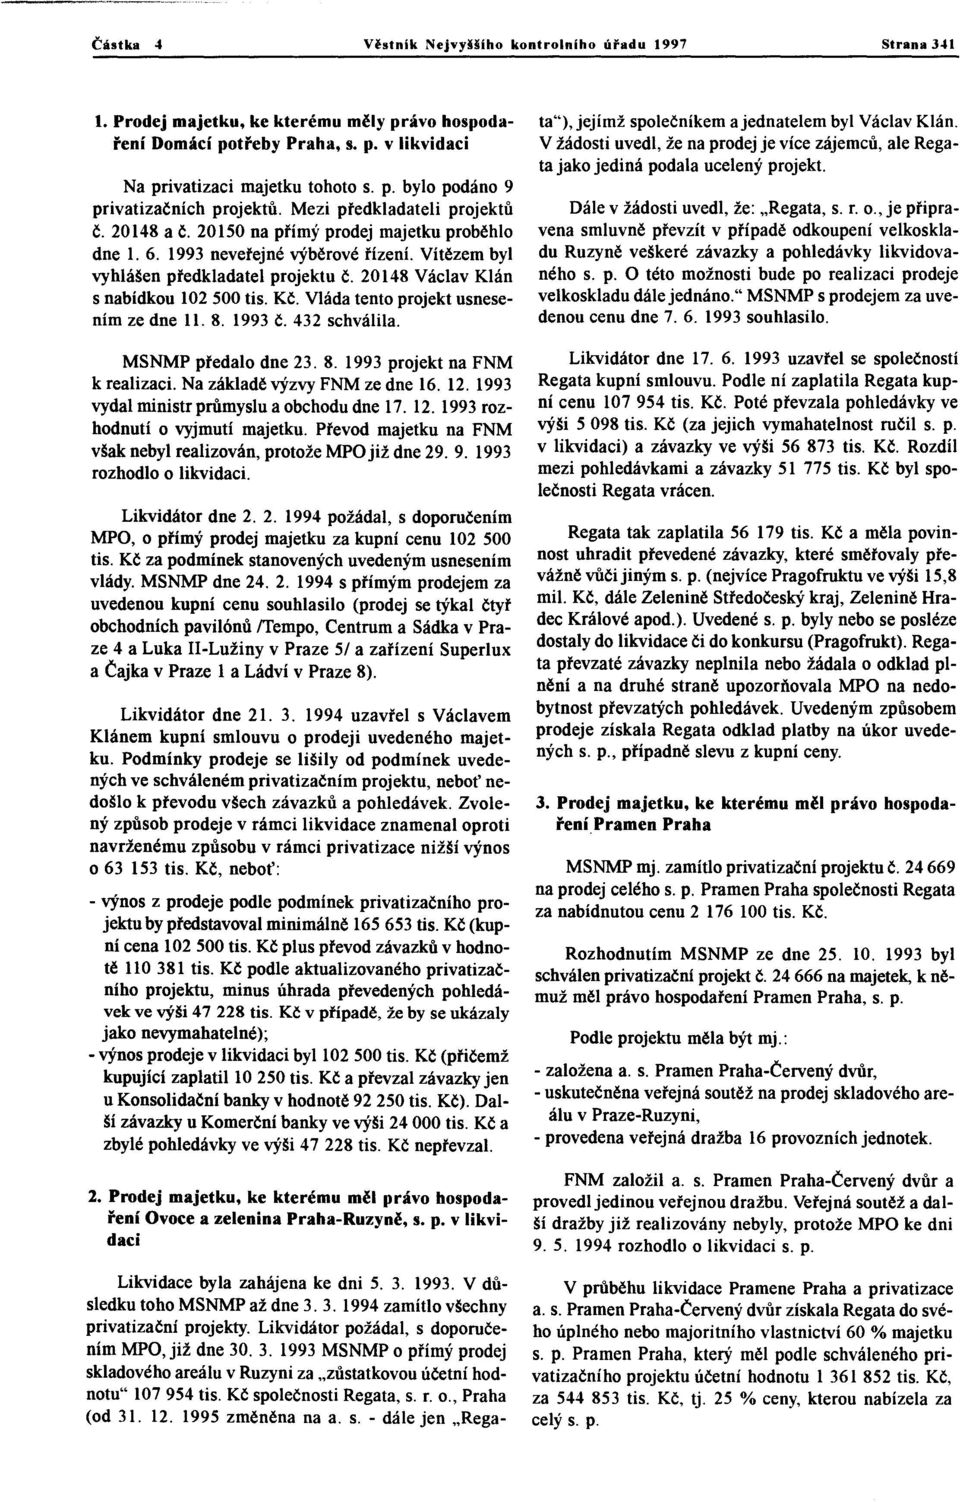 20148 Václav Klán s nabídkou 102 500 tis. Kč. Vláda tento projekt usnesením ze dne ll. 8. 1993 Č. 432 schválila. MSNMP předalo dne 23.8. 1993 projekt na FNM k realizaci.